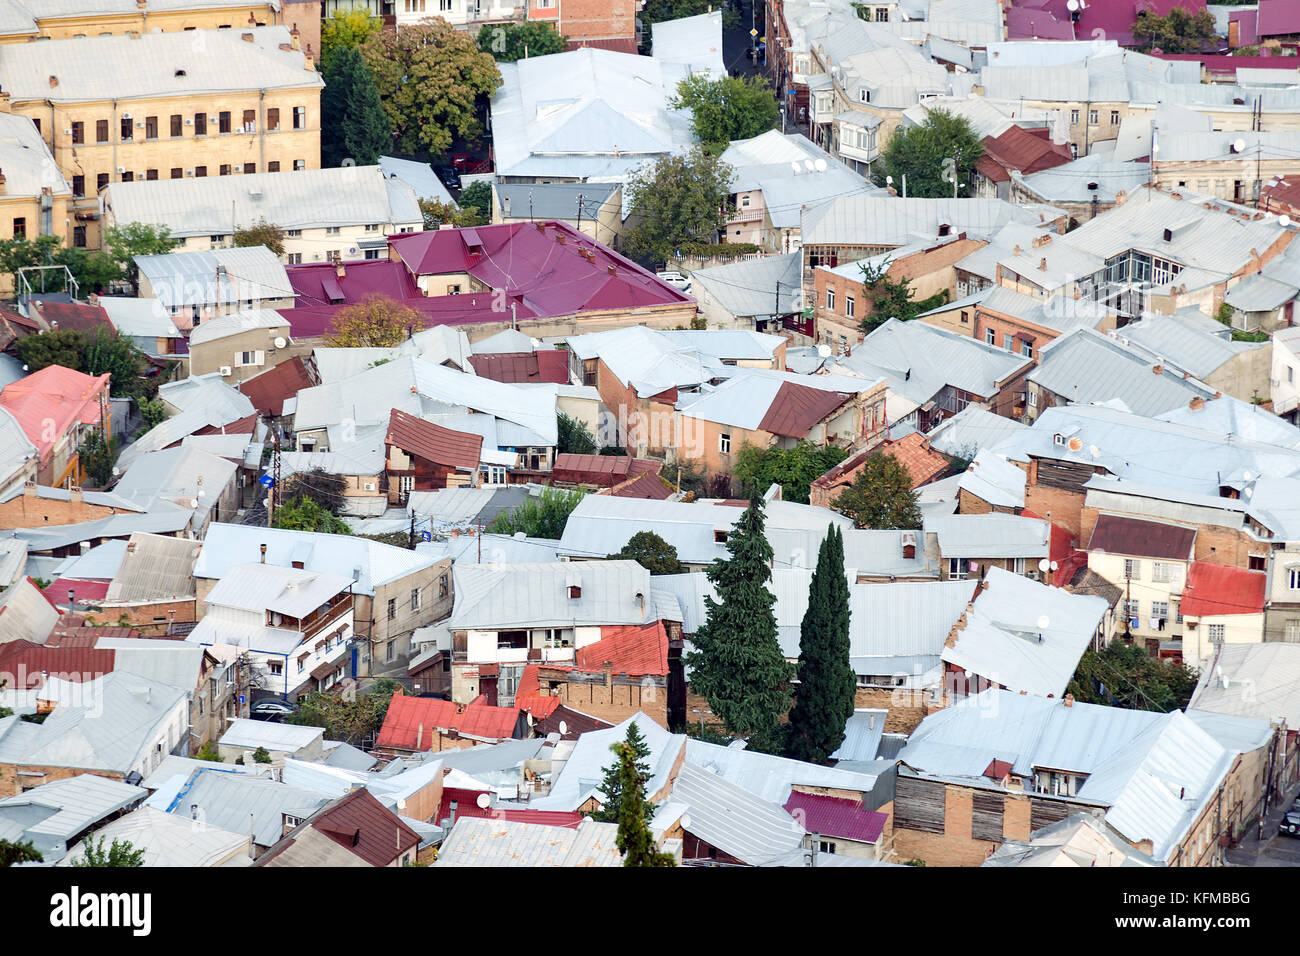 Dichten städtischen Entwicklung - ein Blick auf die Dächer der Häuser von oben. Überbevölkerung Konzept. Stockfoto